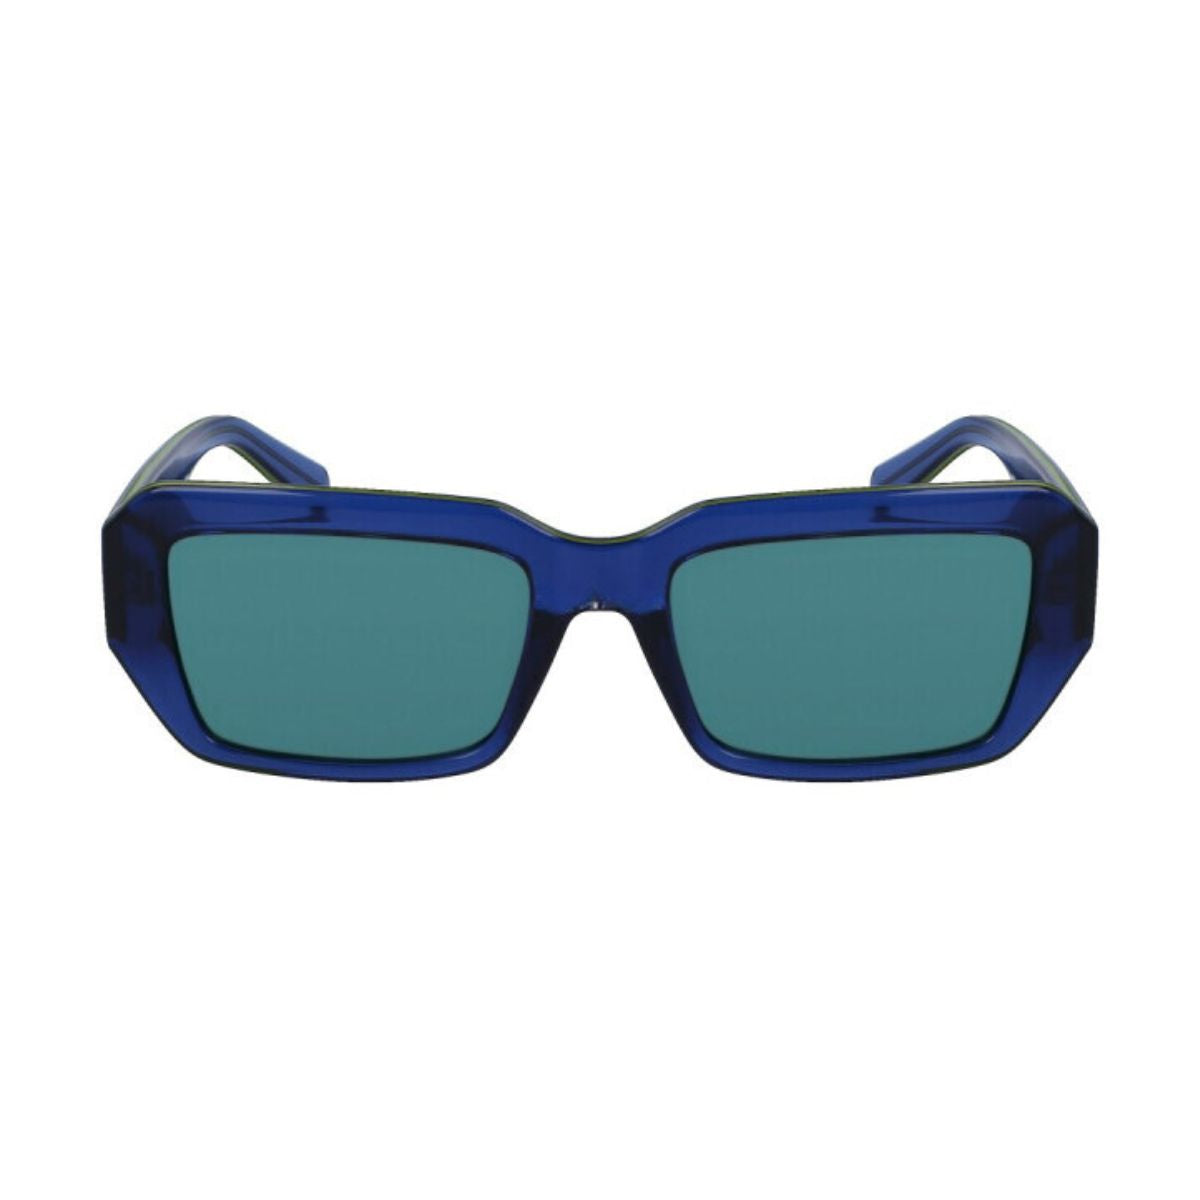 "Buy Calvin Klein Square Sunglasses For Mens At Optorium"